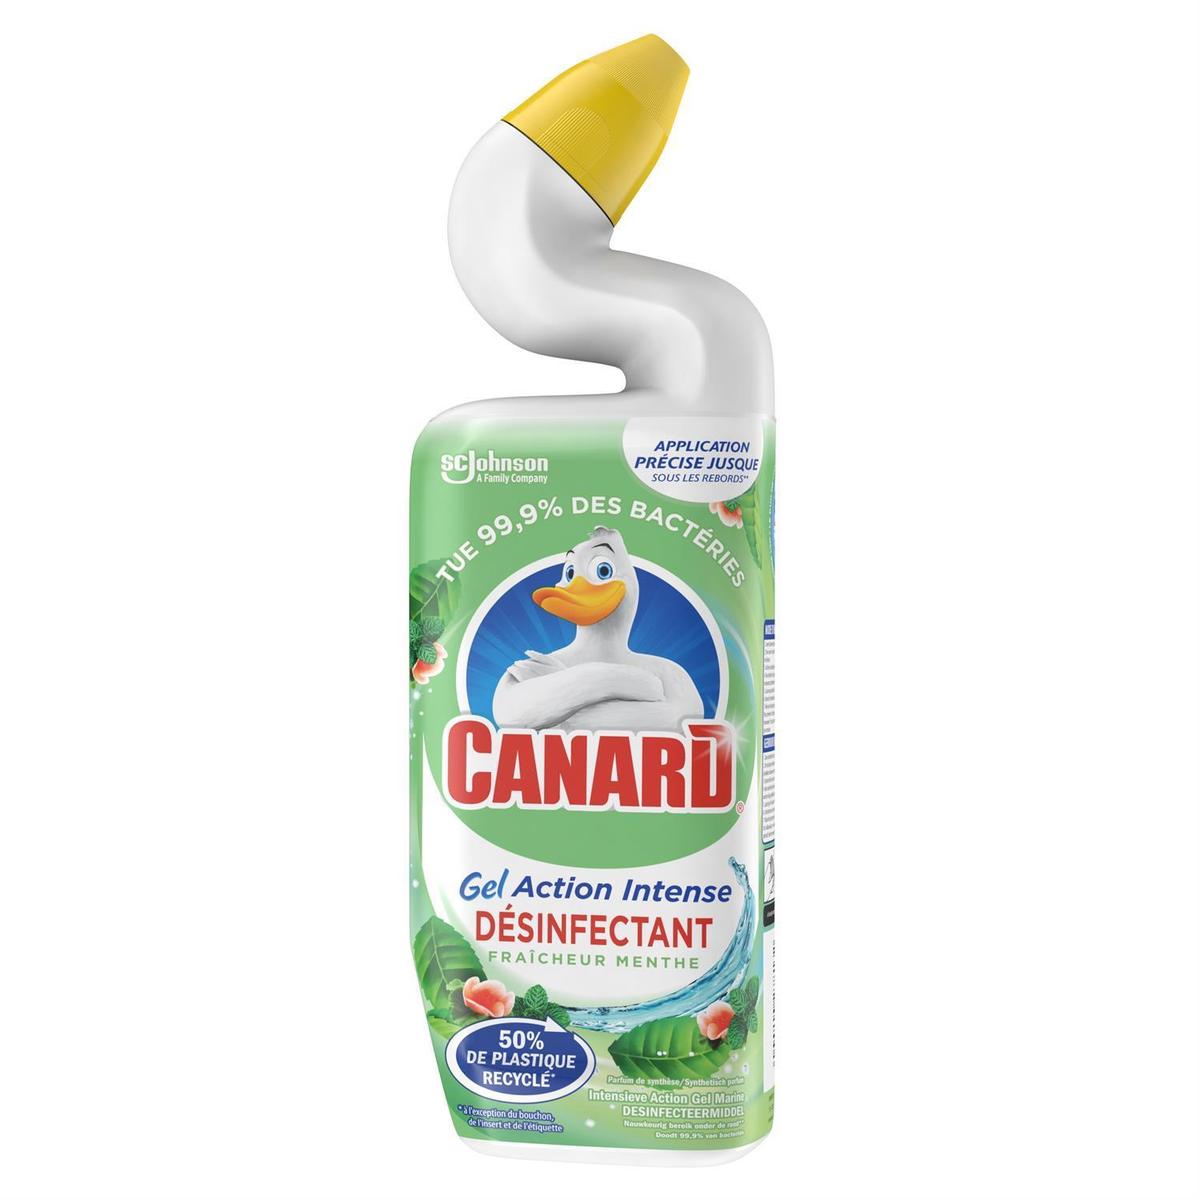 Achat Canard Gel WC Action Intense désinfectant Fraîcheur Menthe, 750ml